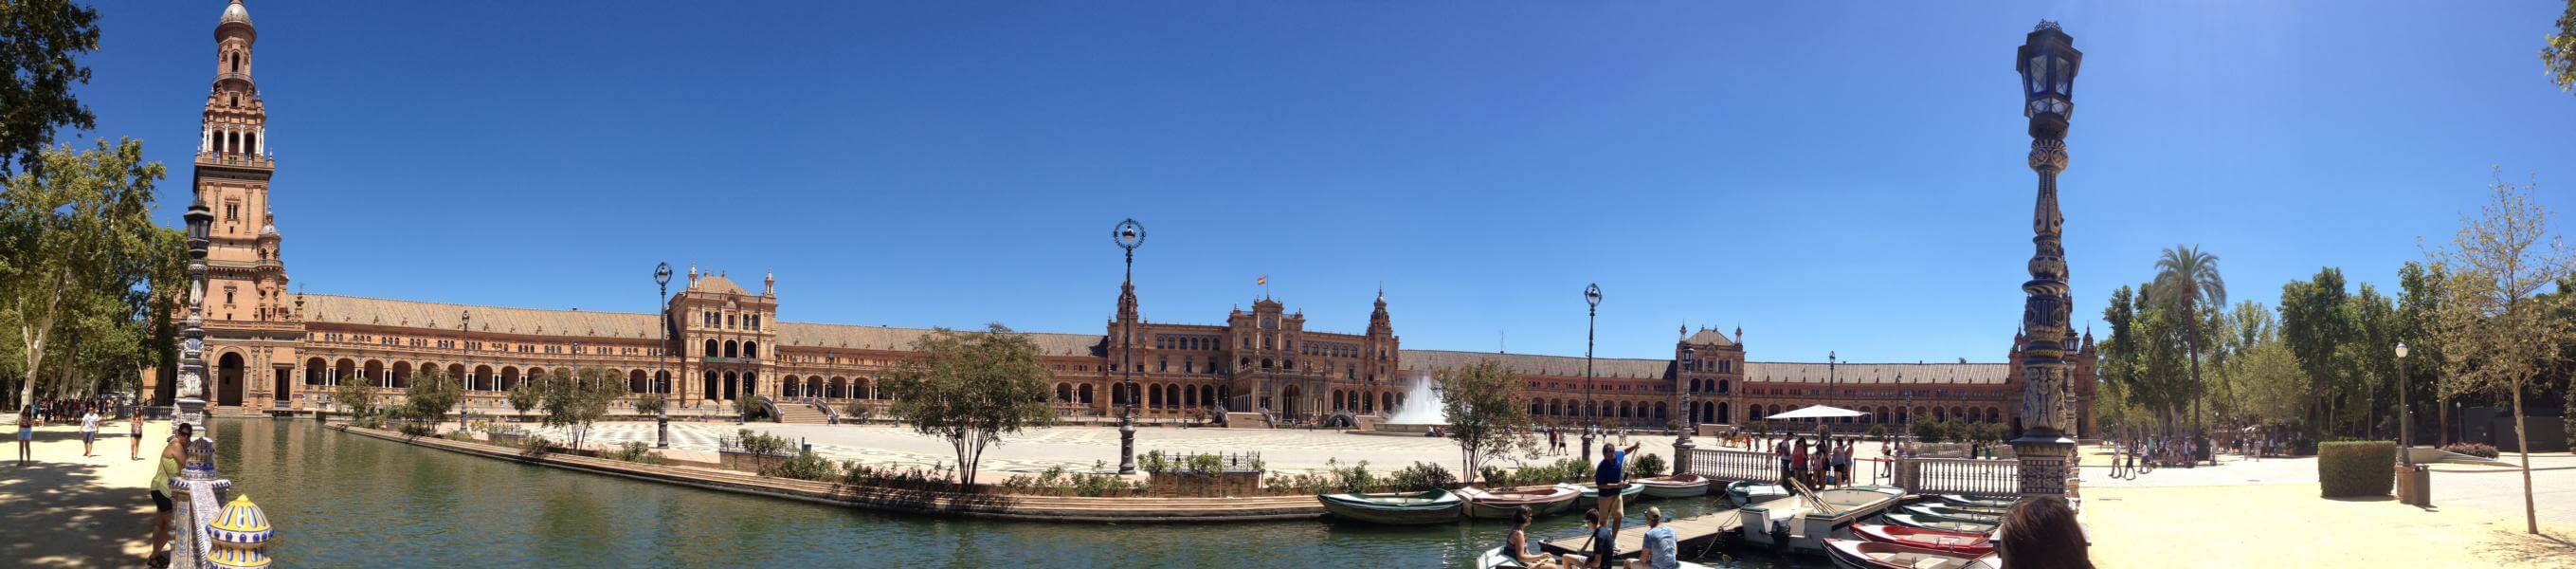 Plaza de Espana, Sevilla, Andalusien